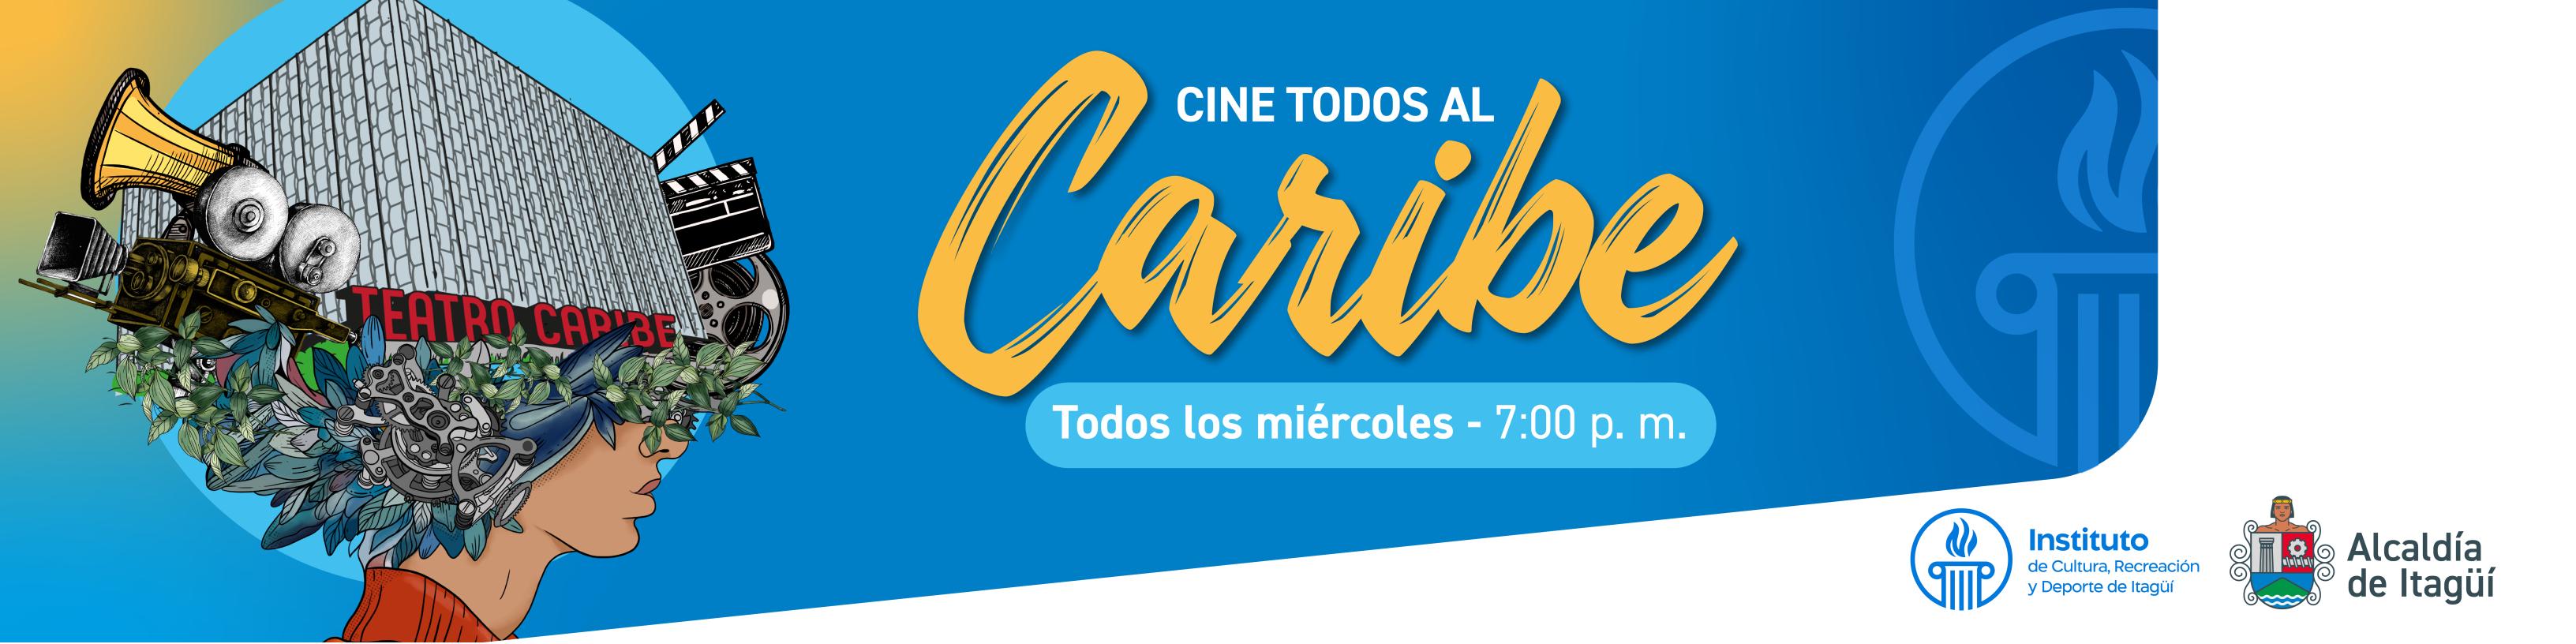 Cine Todos al Caribe, los miércoles a las7:00 p.m. 